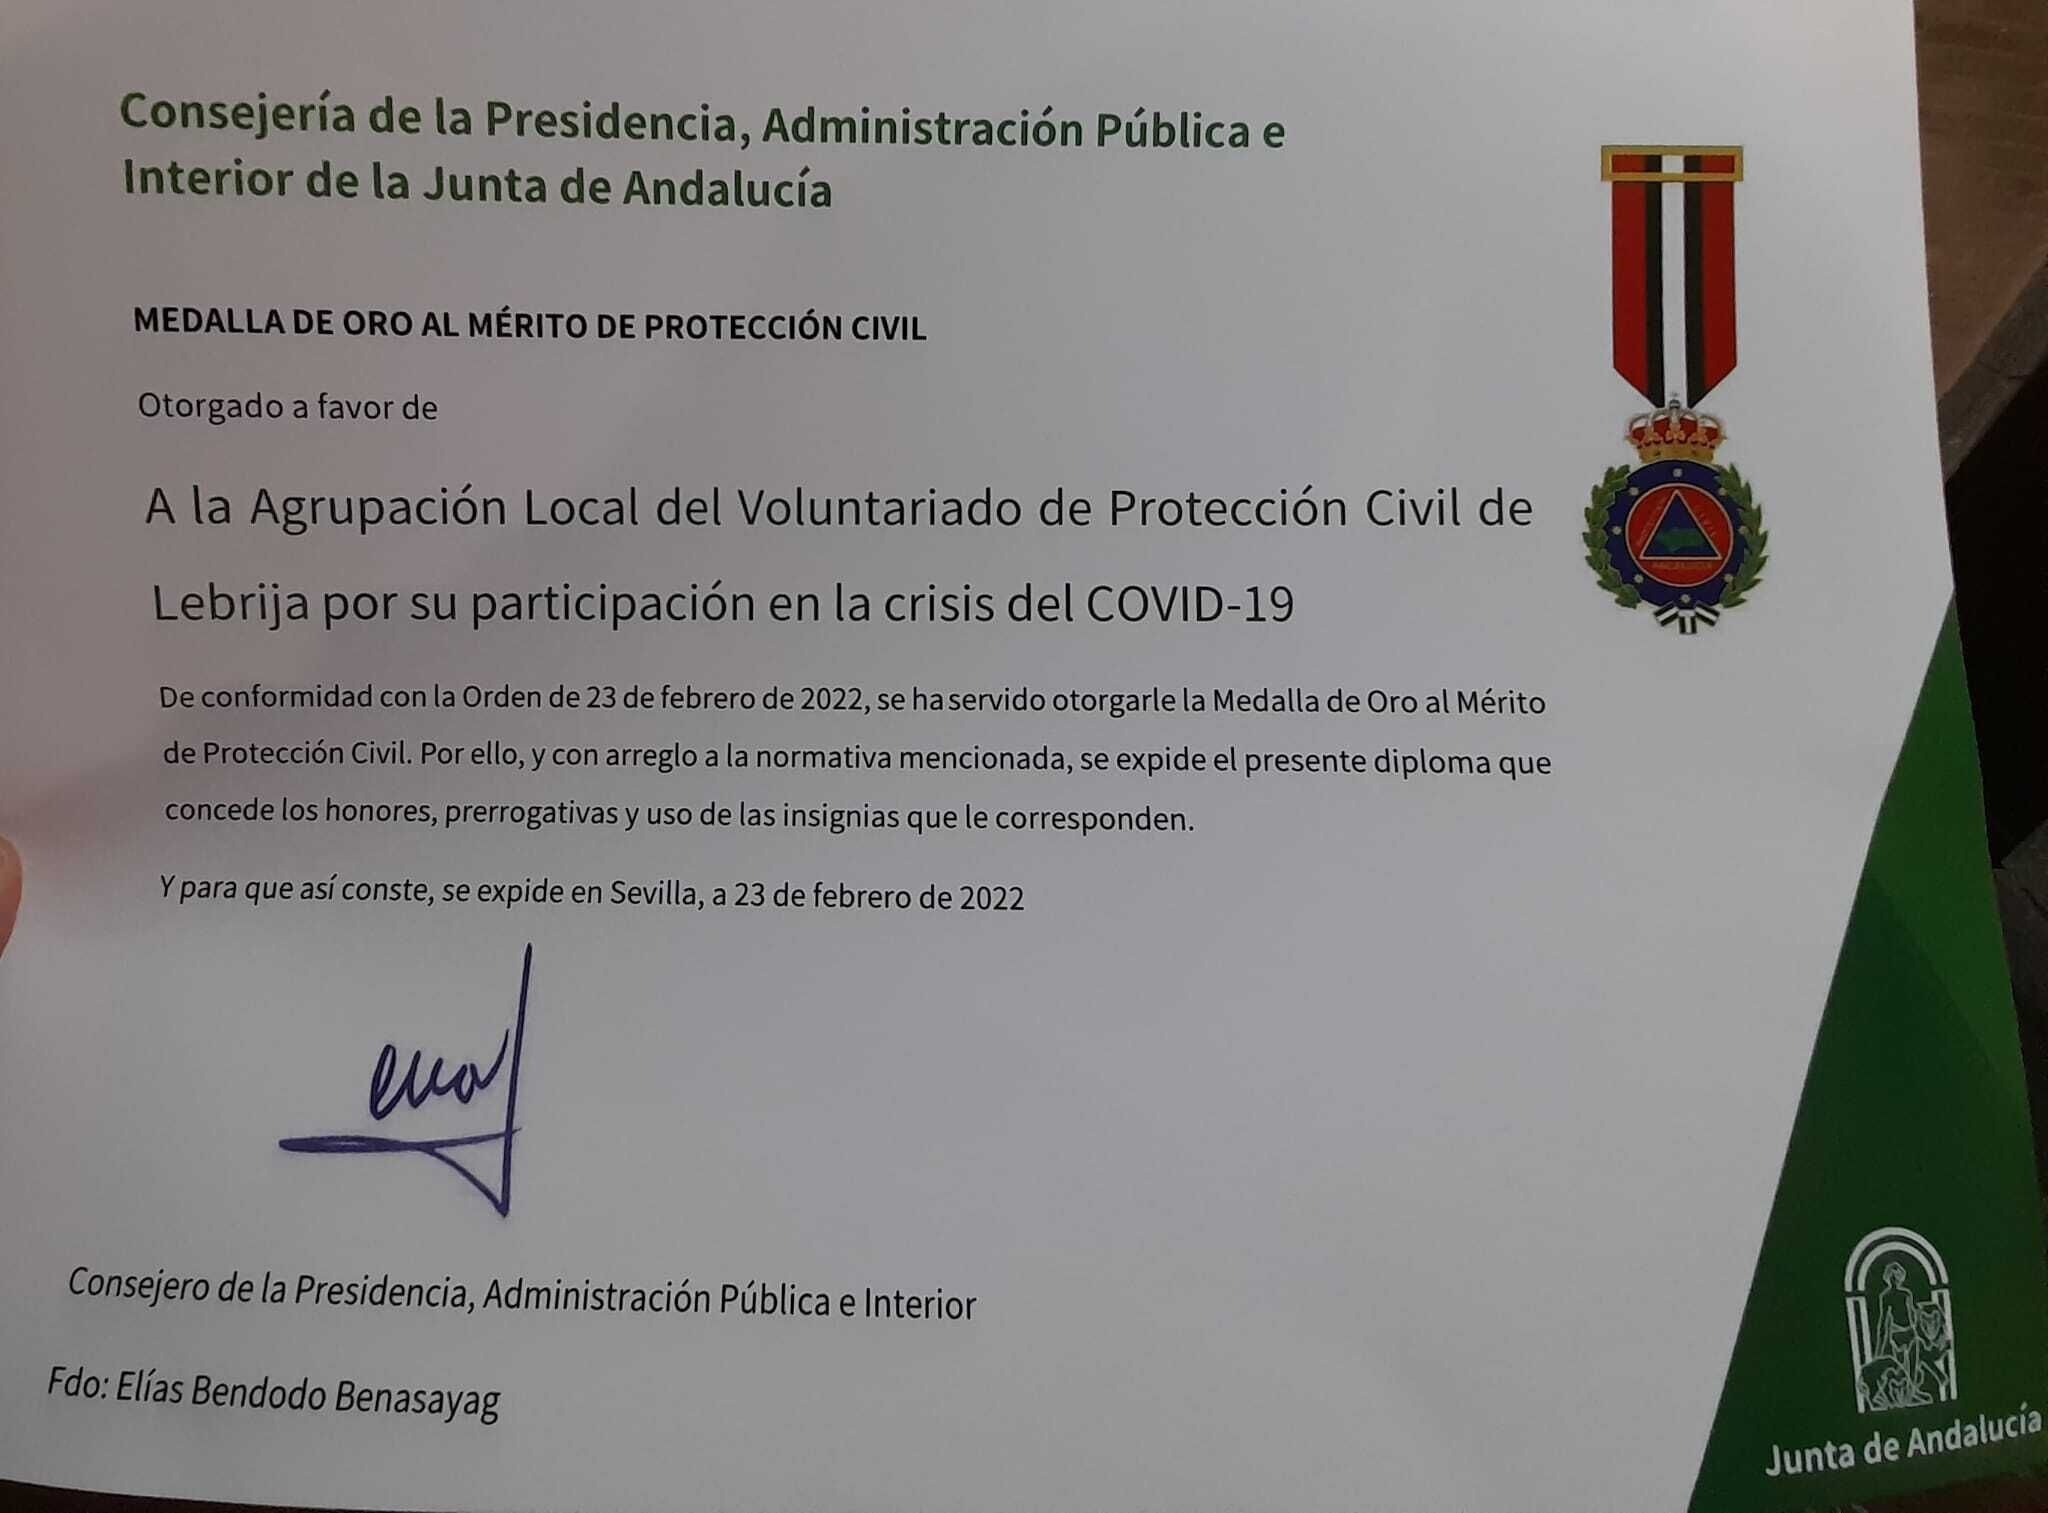 Medalla de Oro al Mérito de Protección Civil de Andalucía (4)